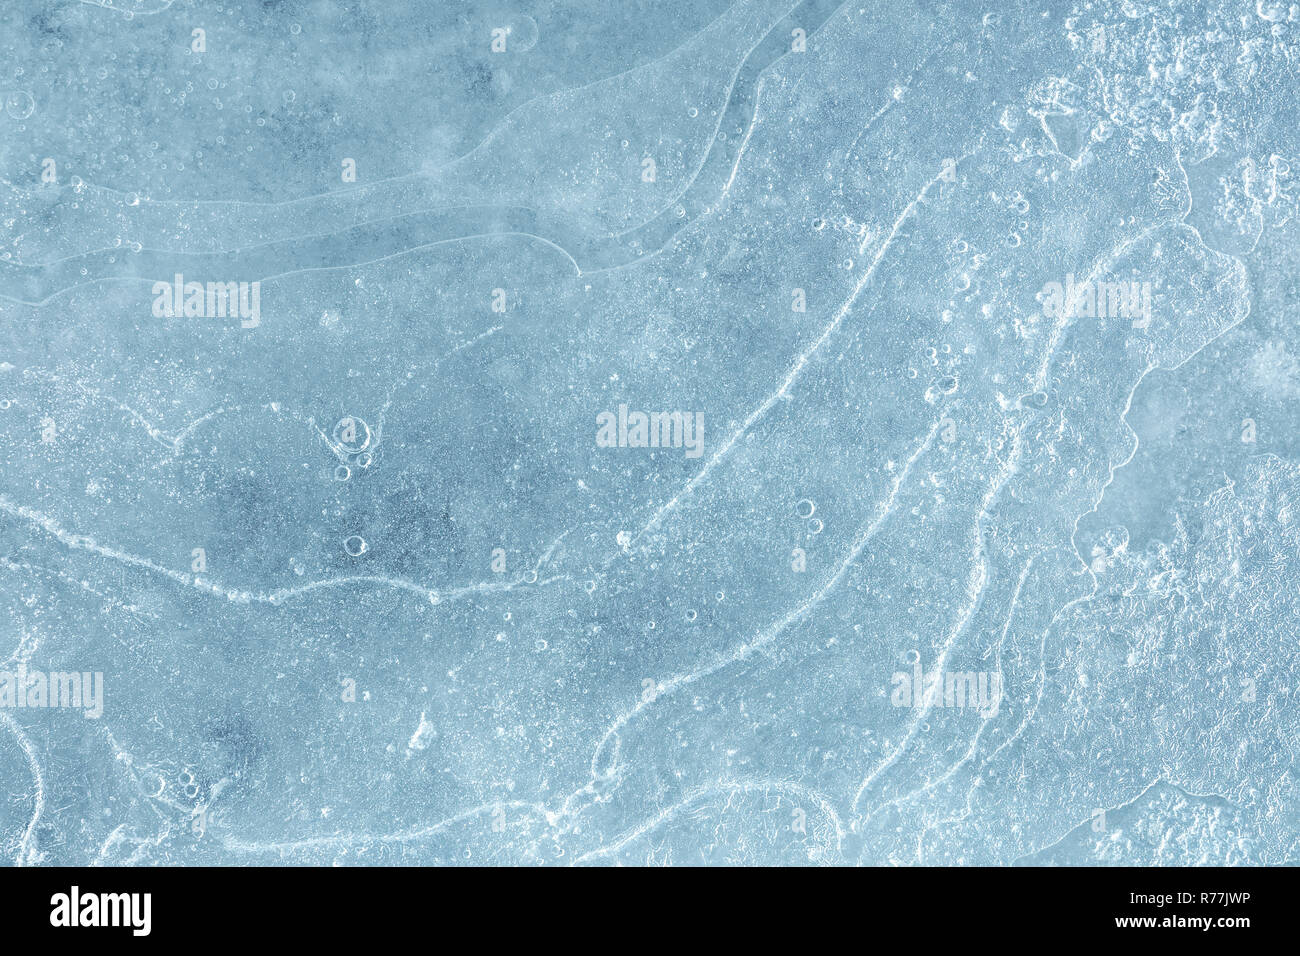 Eisige See Oberfläche mit Eis bedeckt. Winter eisige Hintergrund Makro anzeigen Stockfoto